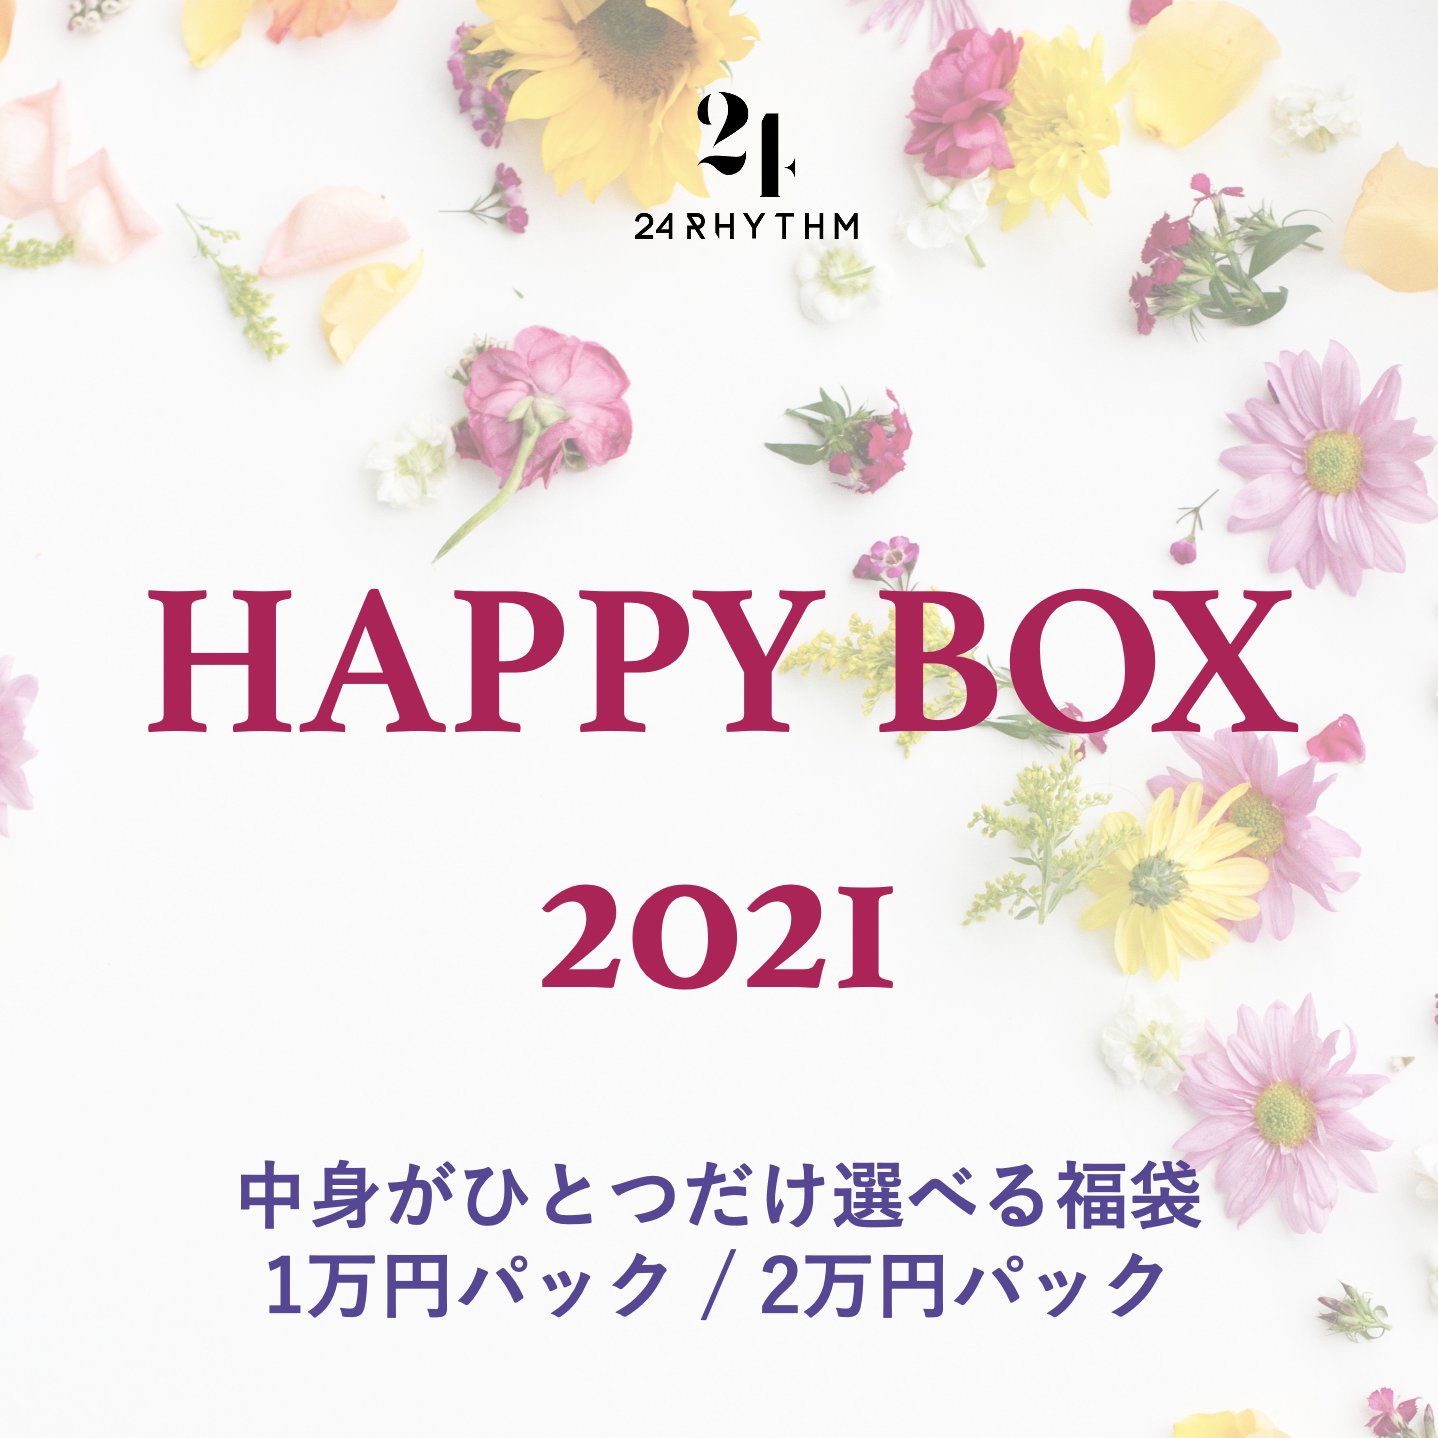 【予約受付中！】HAPPY BOX 2021 ー中身がひとつだけ選べる福袋ー 